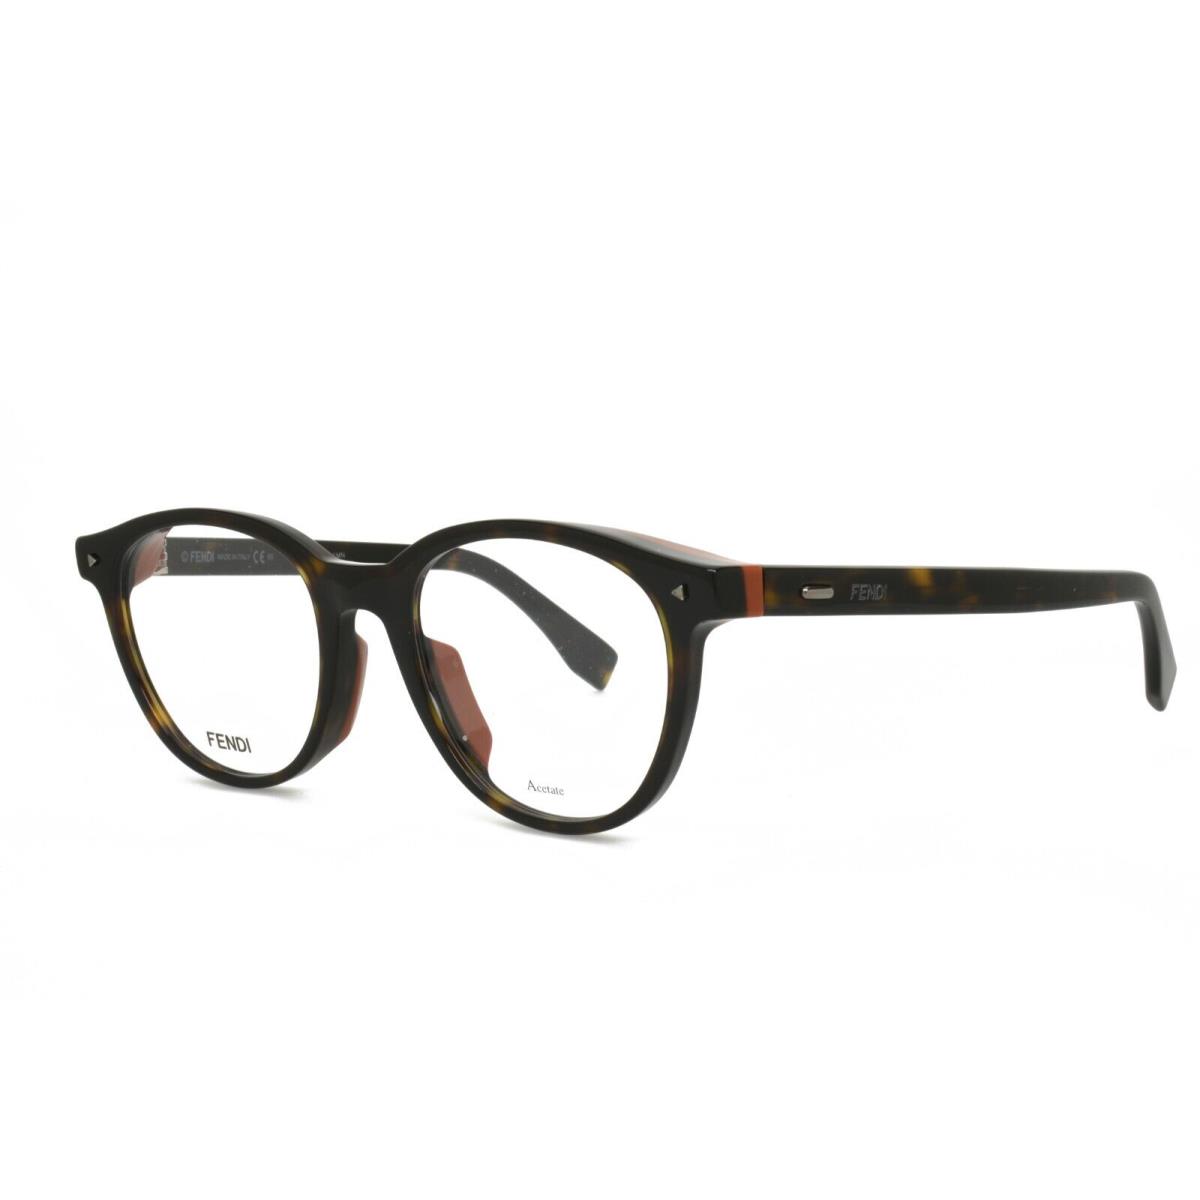 Fendi 0019F 086 51-20-145 Tortoise Eyeglasses Frames